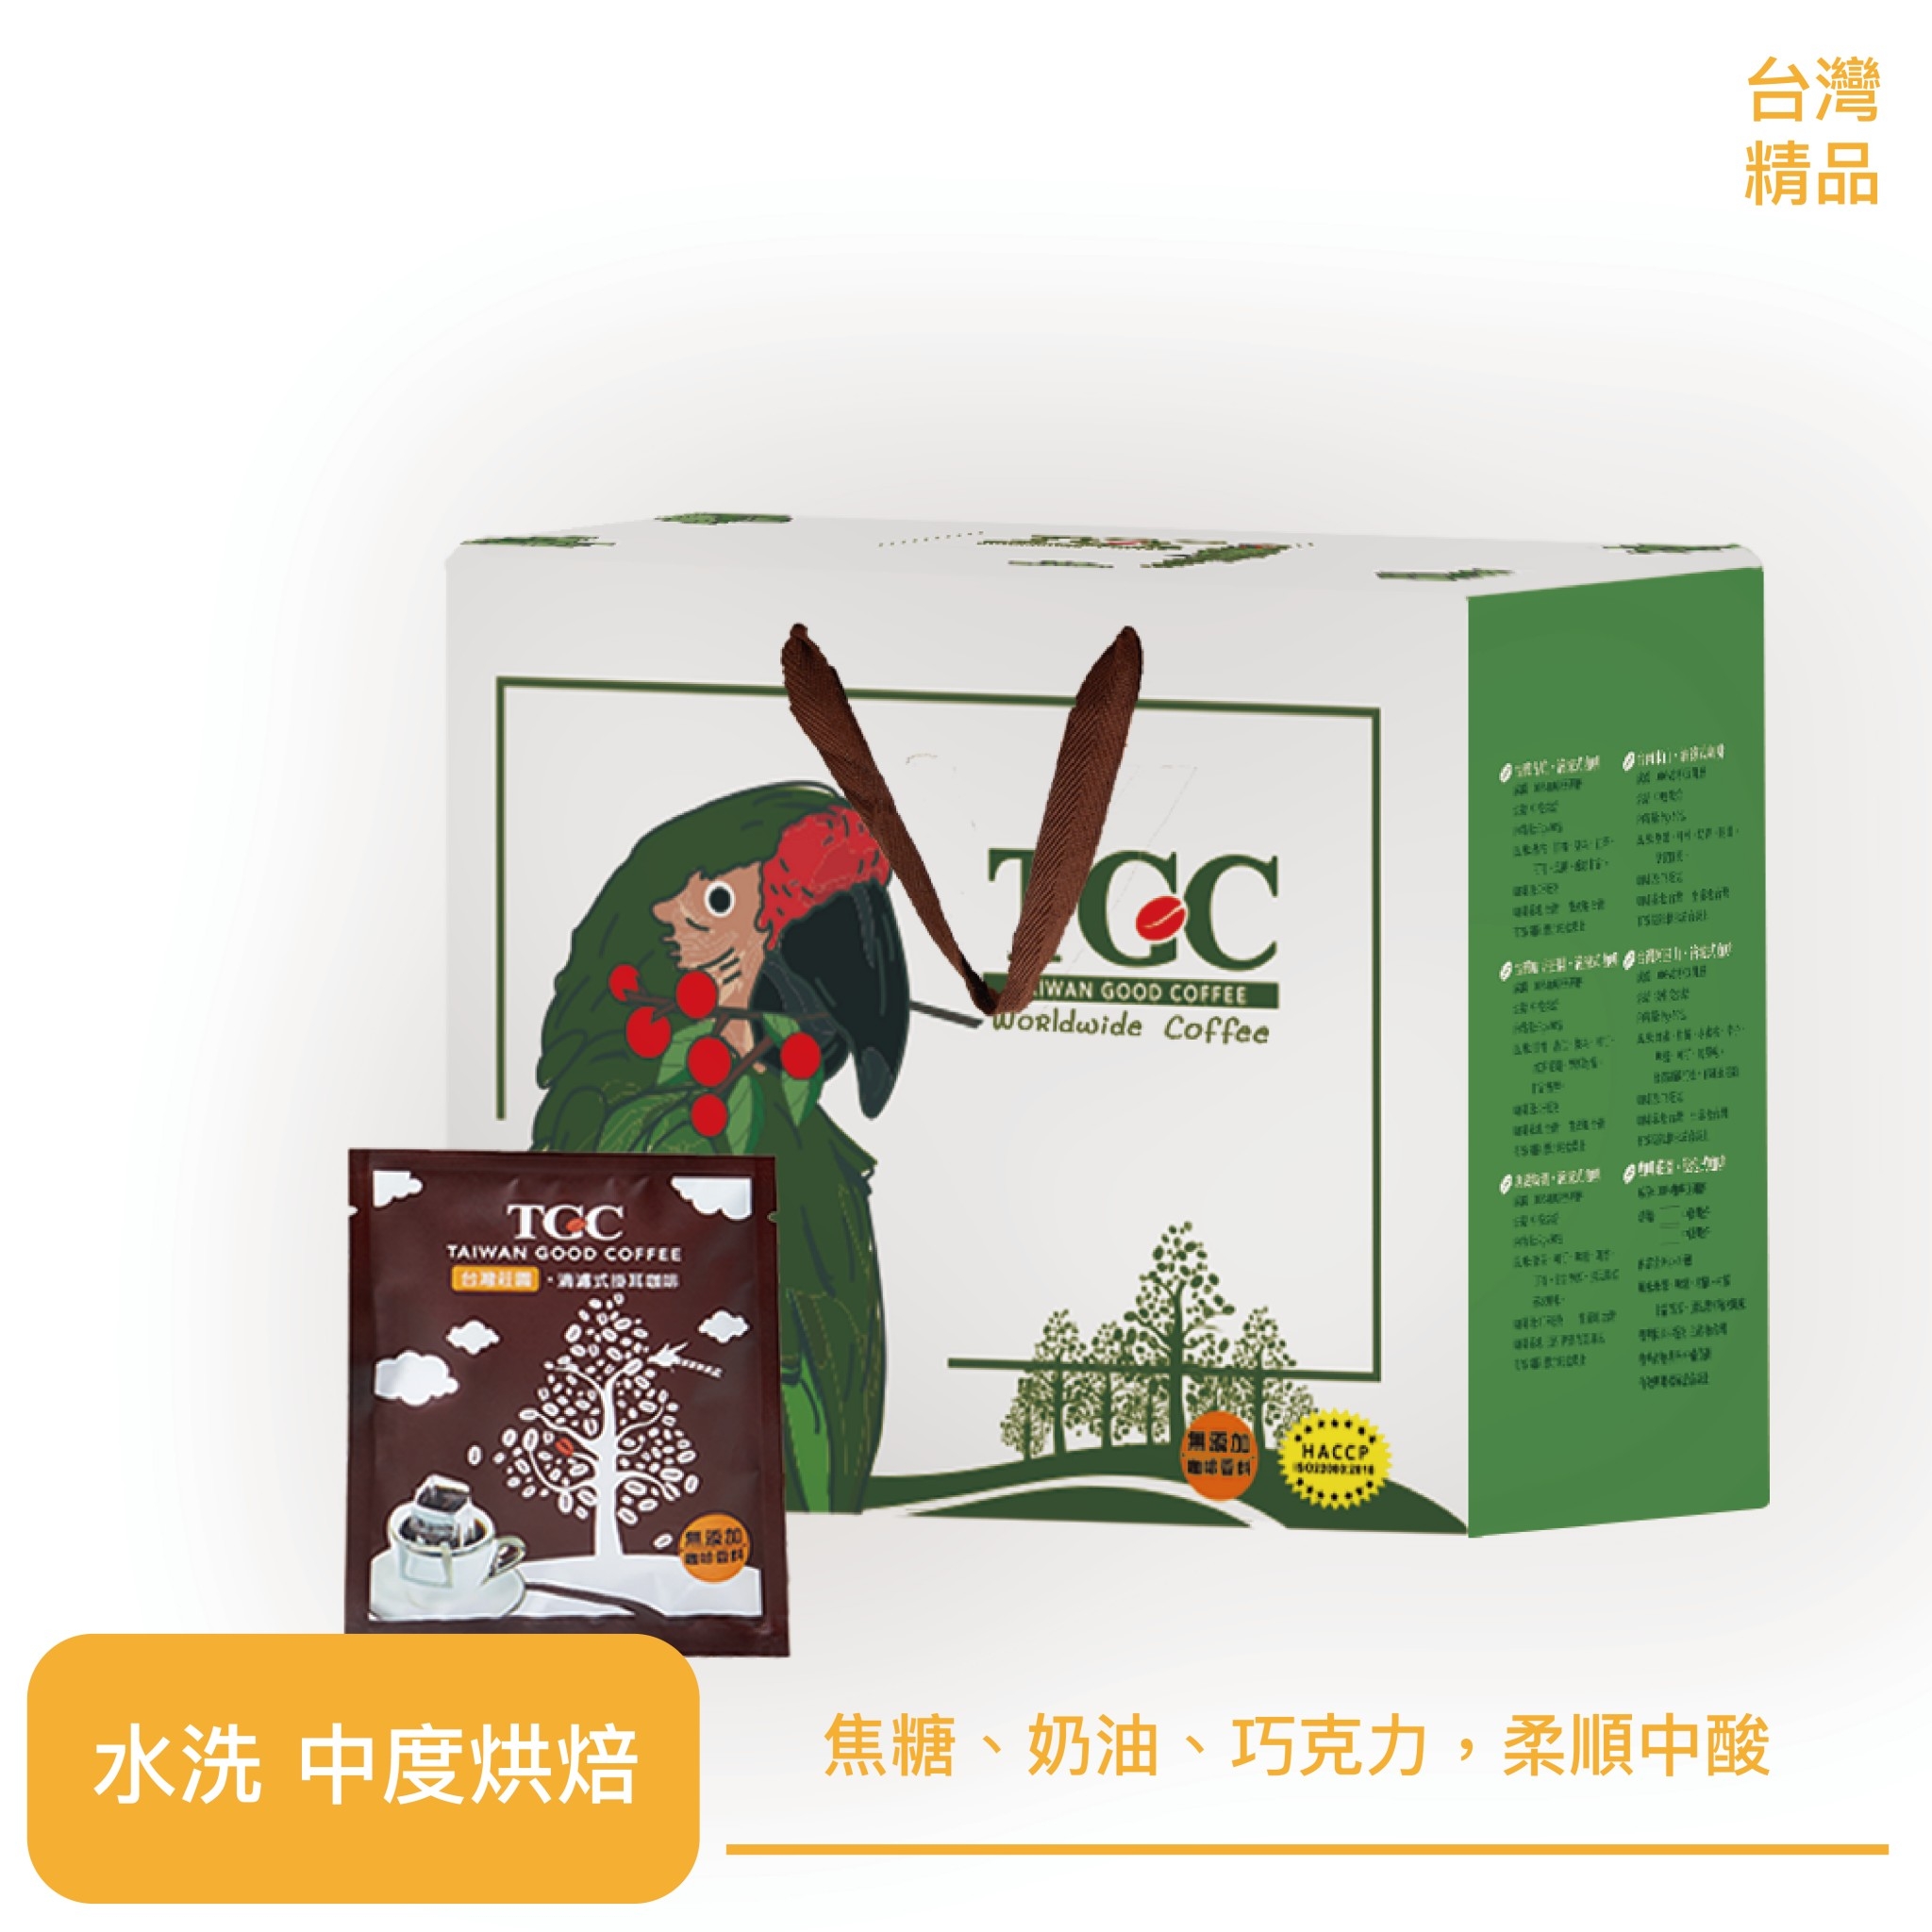 【TGC】 台灣咖啡莊園滴濾式掛耳咖啡/50入 